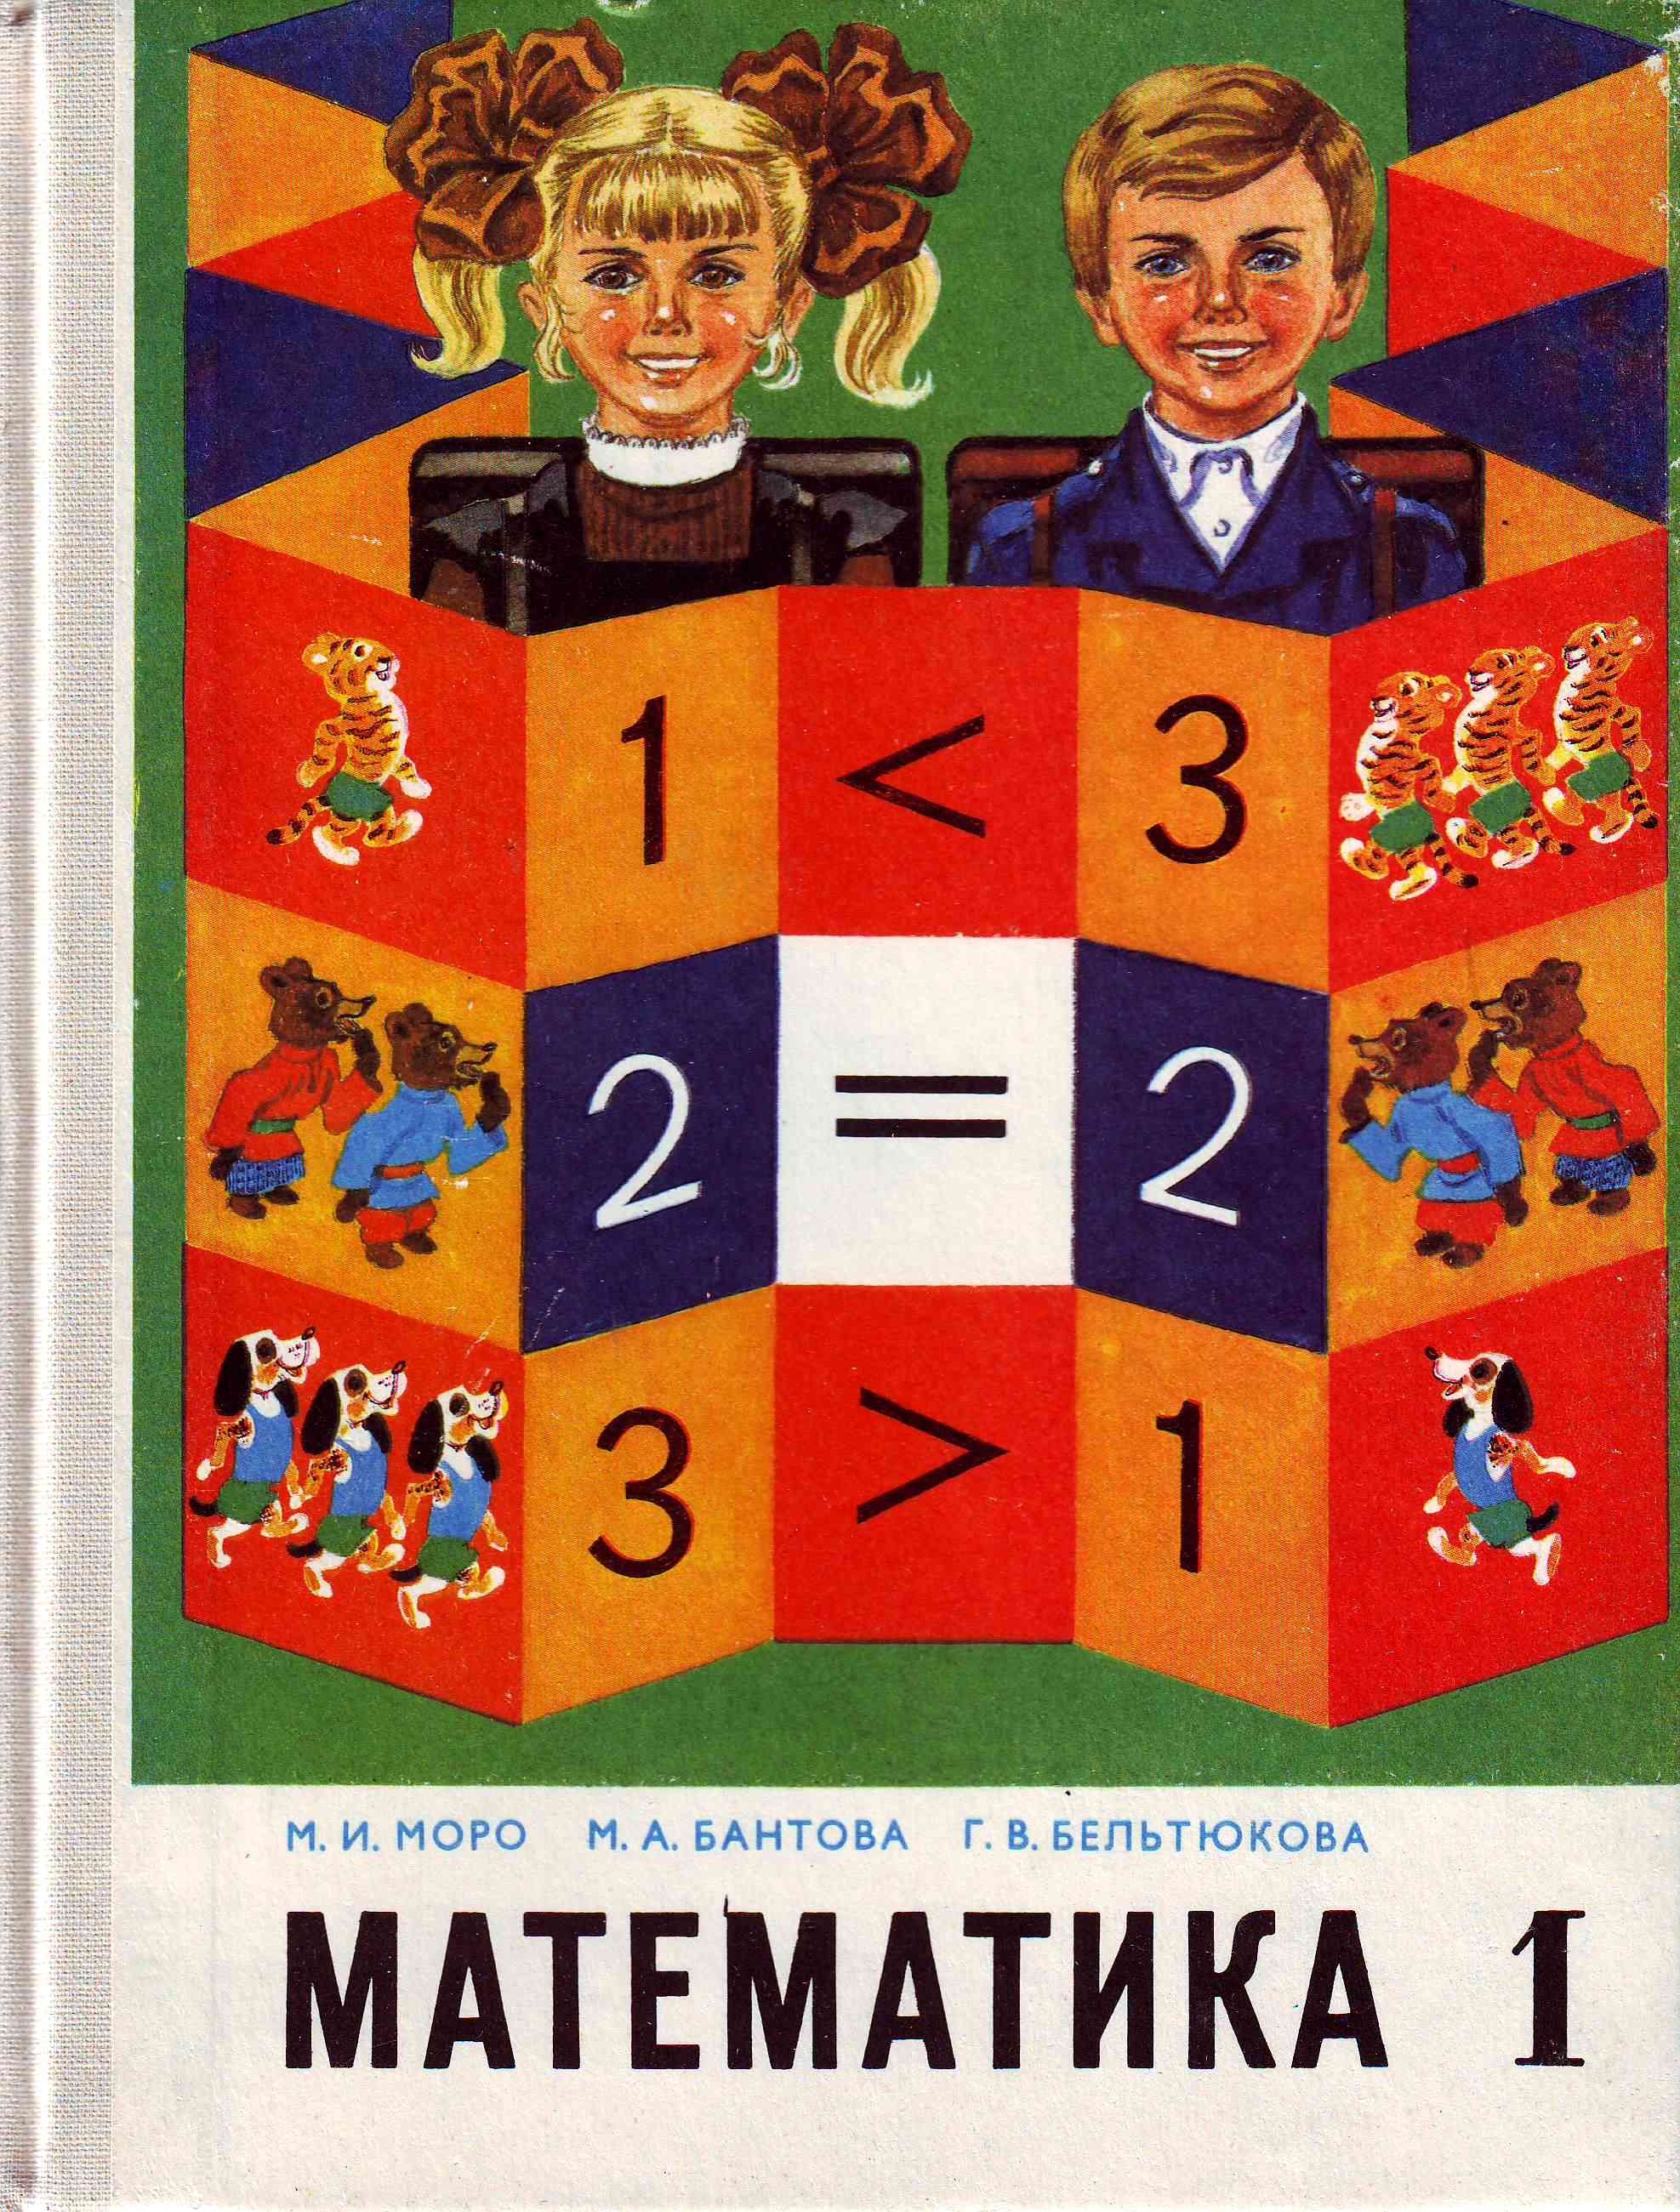 Учебники по математике 60 годов